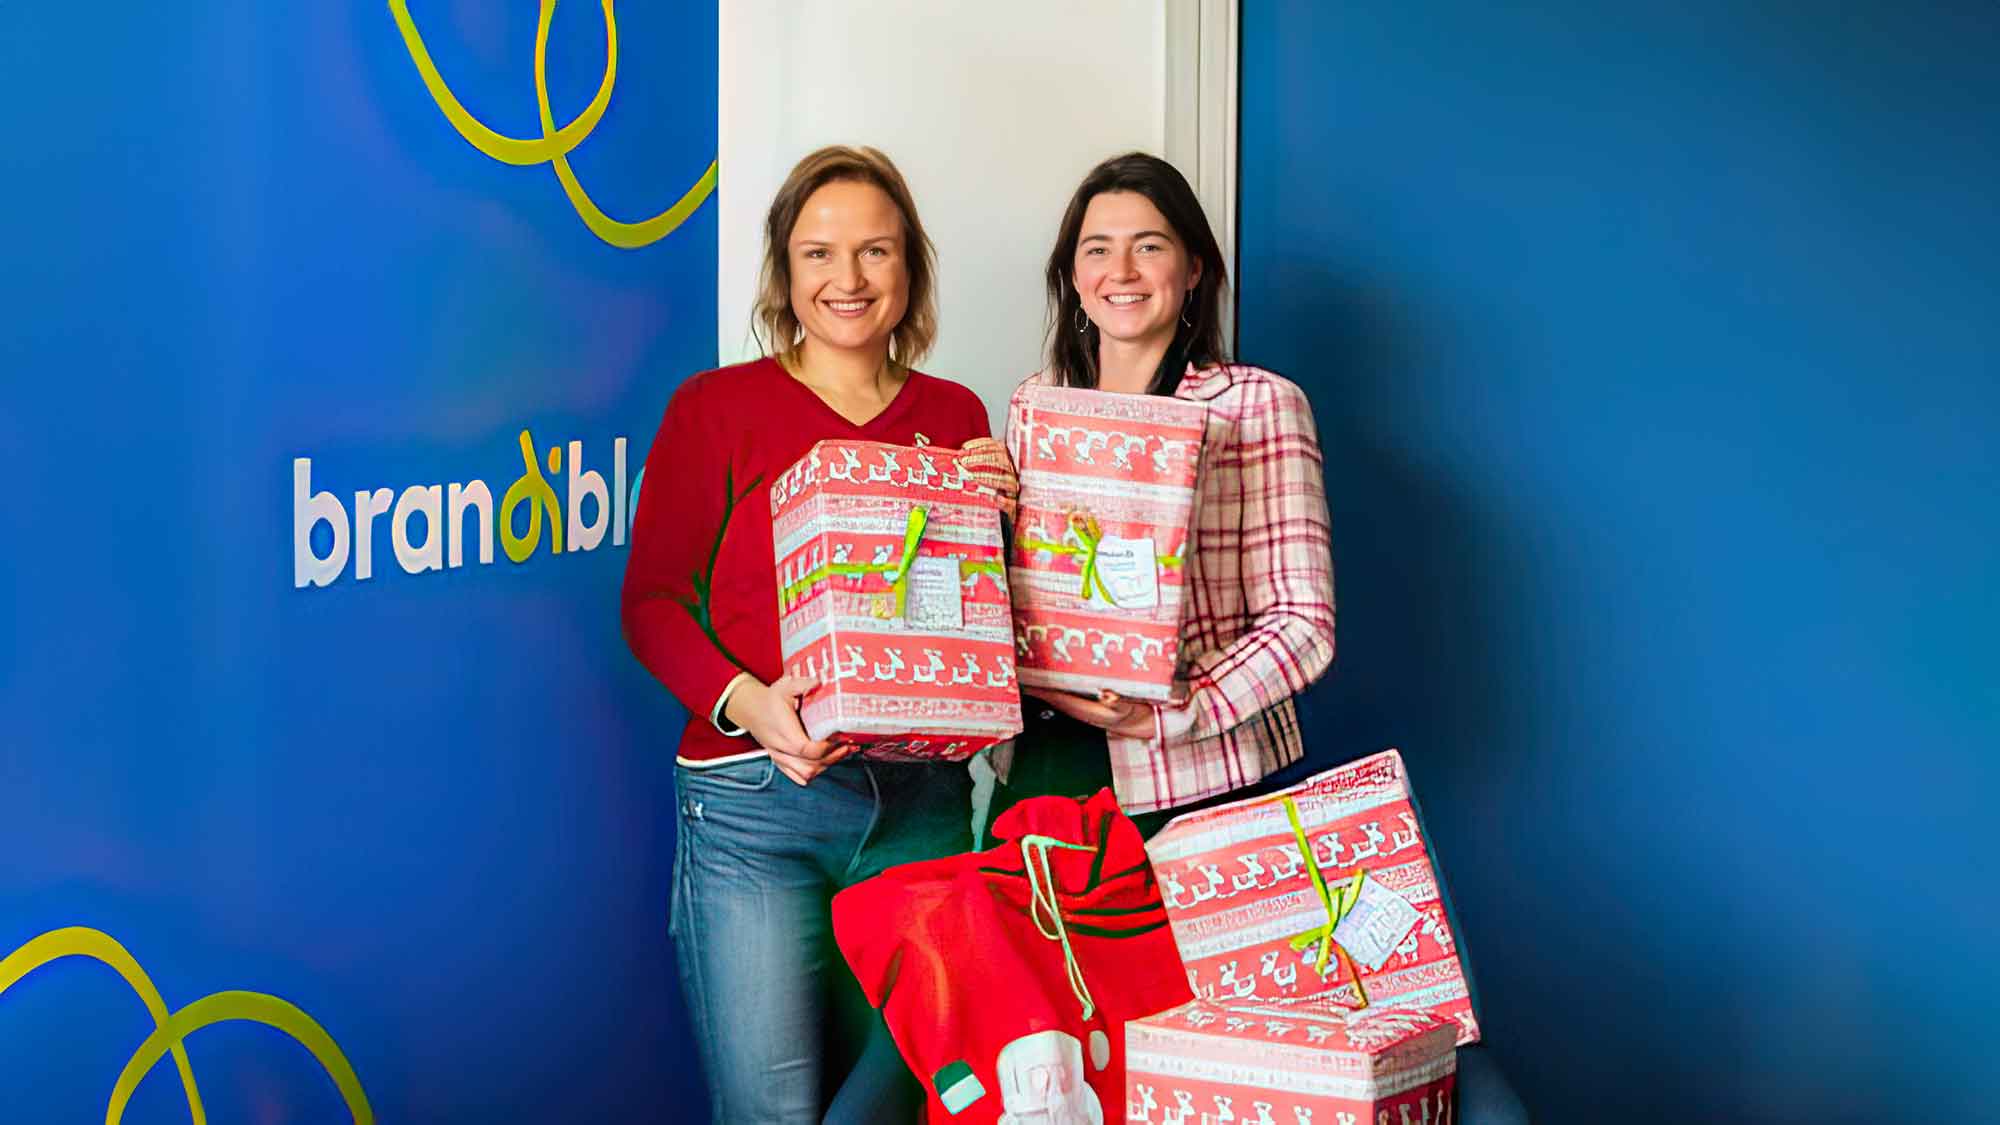 Bescherung bei der Arbeitsloseninitiative Sachsen: Brandible packt Weihnachtspäckchen für bedürftige Kinder